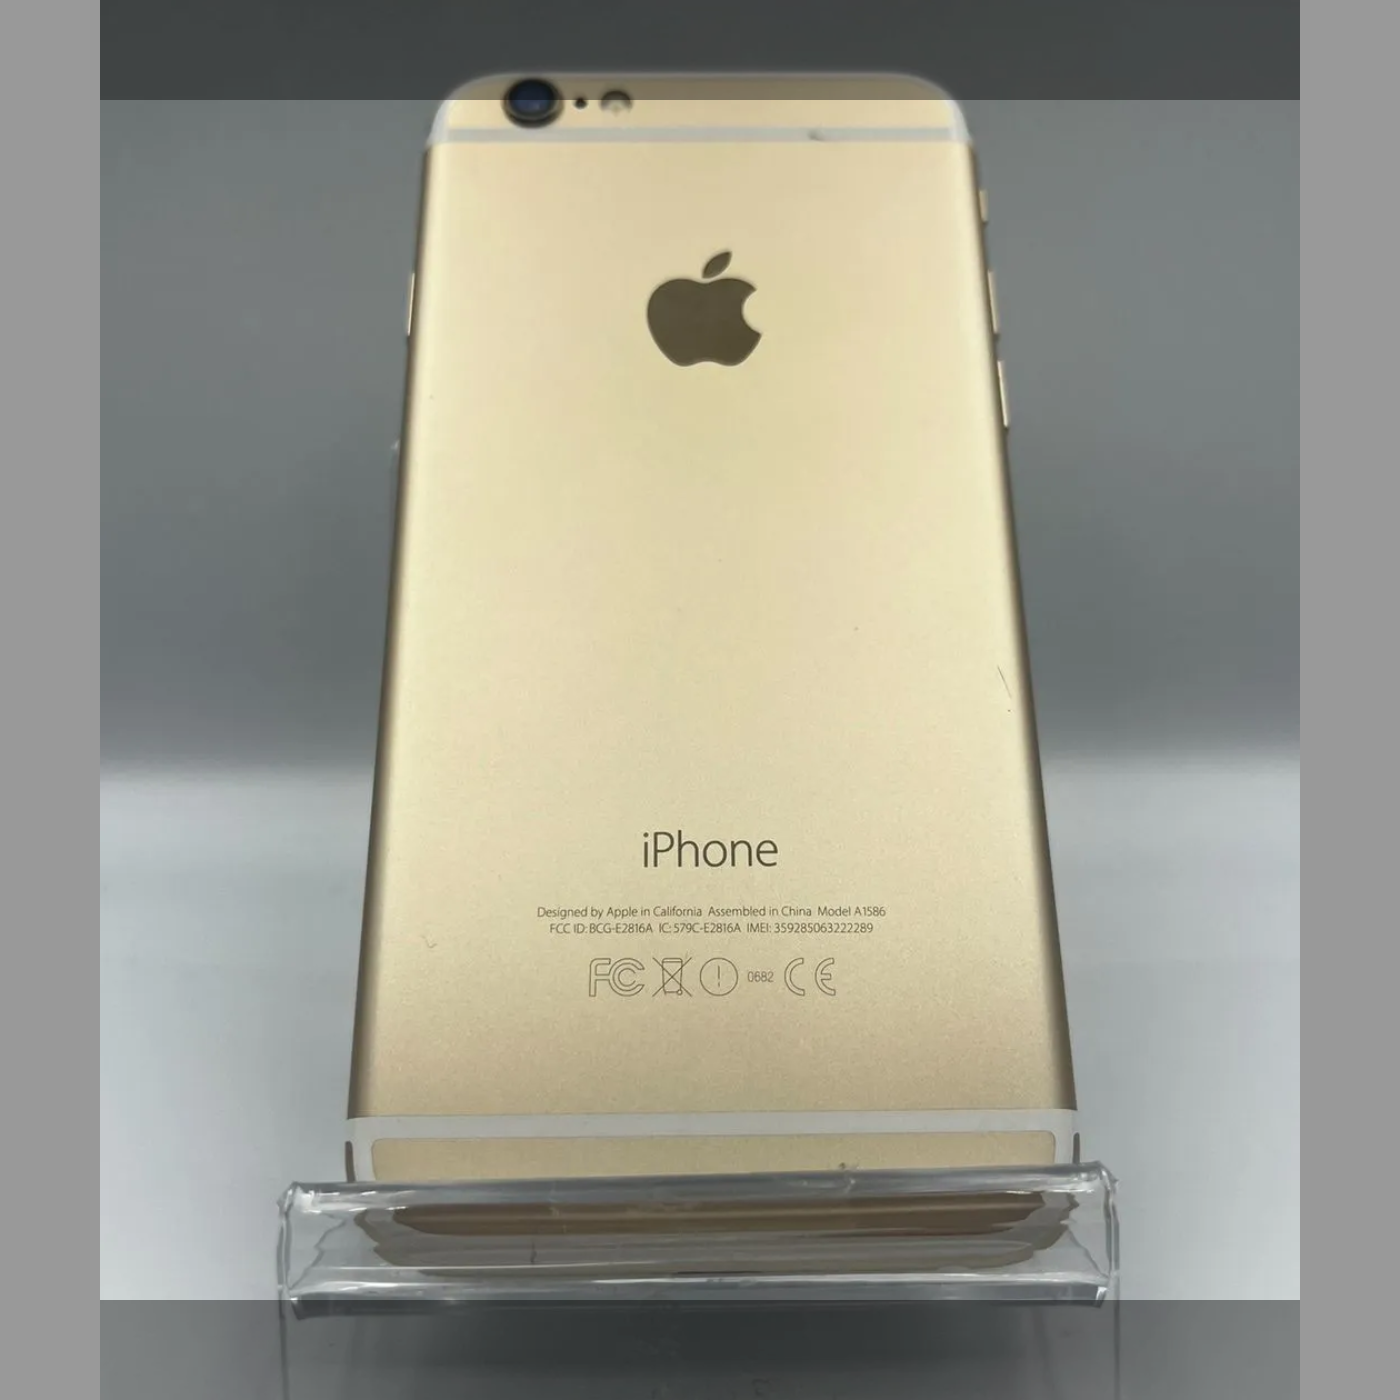 iPhone 6 Gold 16 GB au - スマートフォン本体